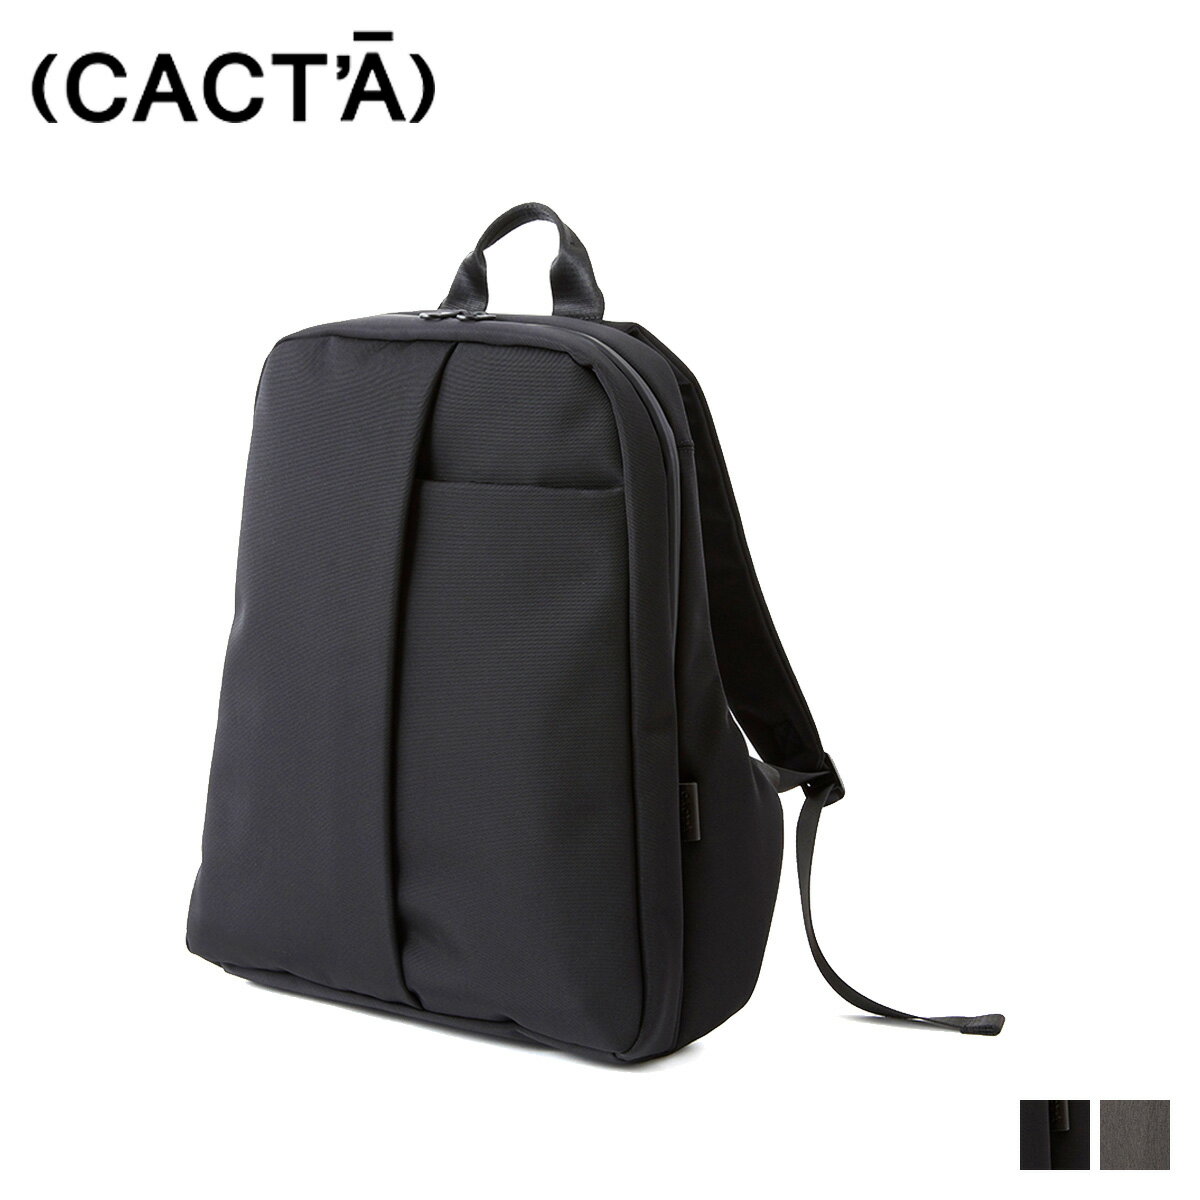 カクタ CACTA リュック バッグ バックパック メンズ COLON BACKPACK ESPACE ブラック グレー 黒 1009